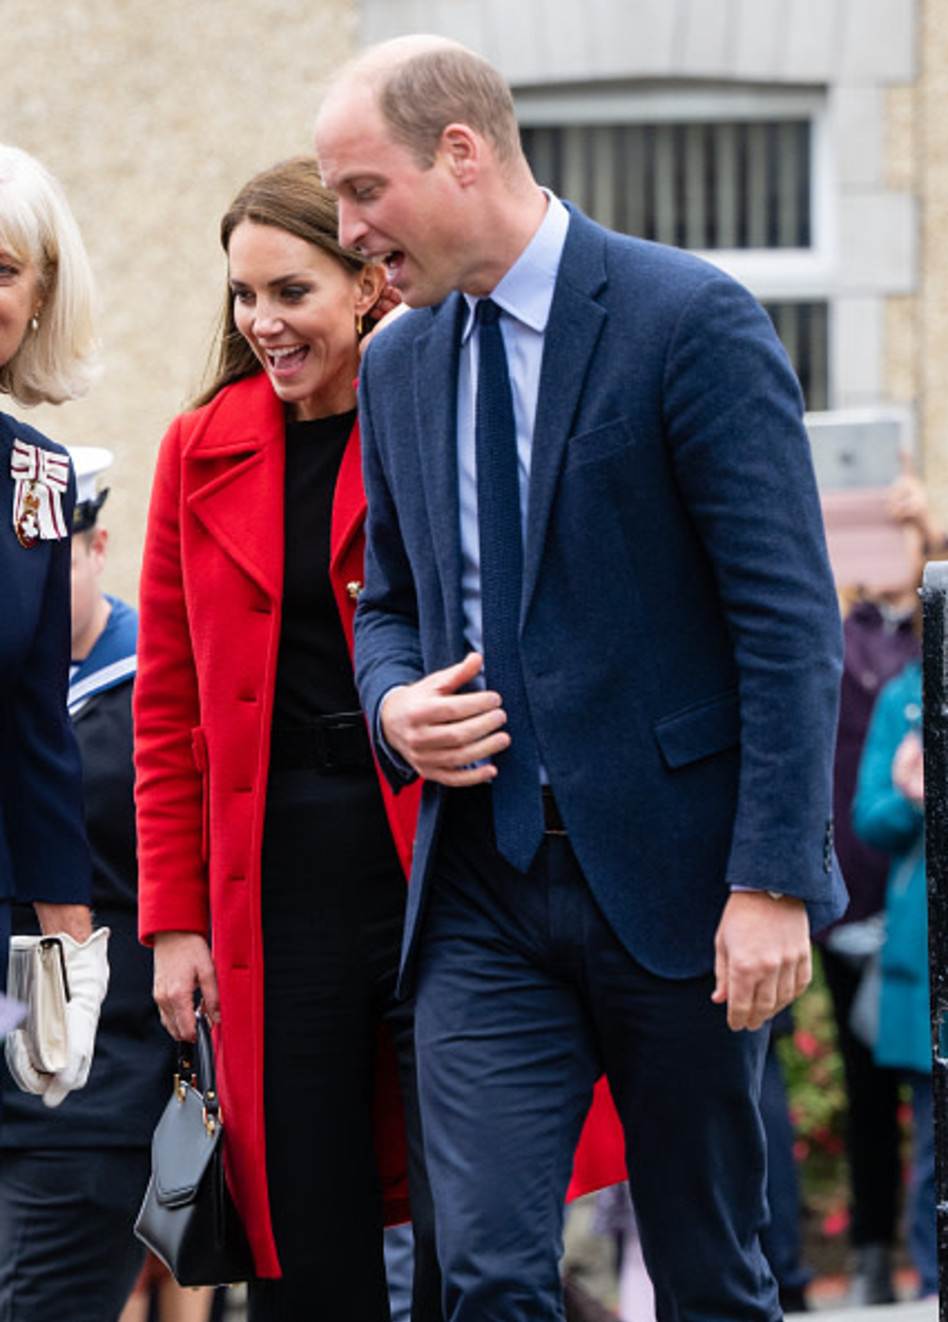 בעין הציבור אבל עם שמות בדויים. הנסיך וויליאם והנסיכה קייט מידלטון (צילום:  Samir Hussein gettyimages)